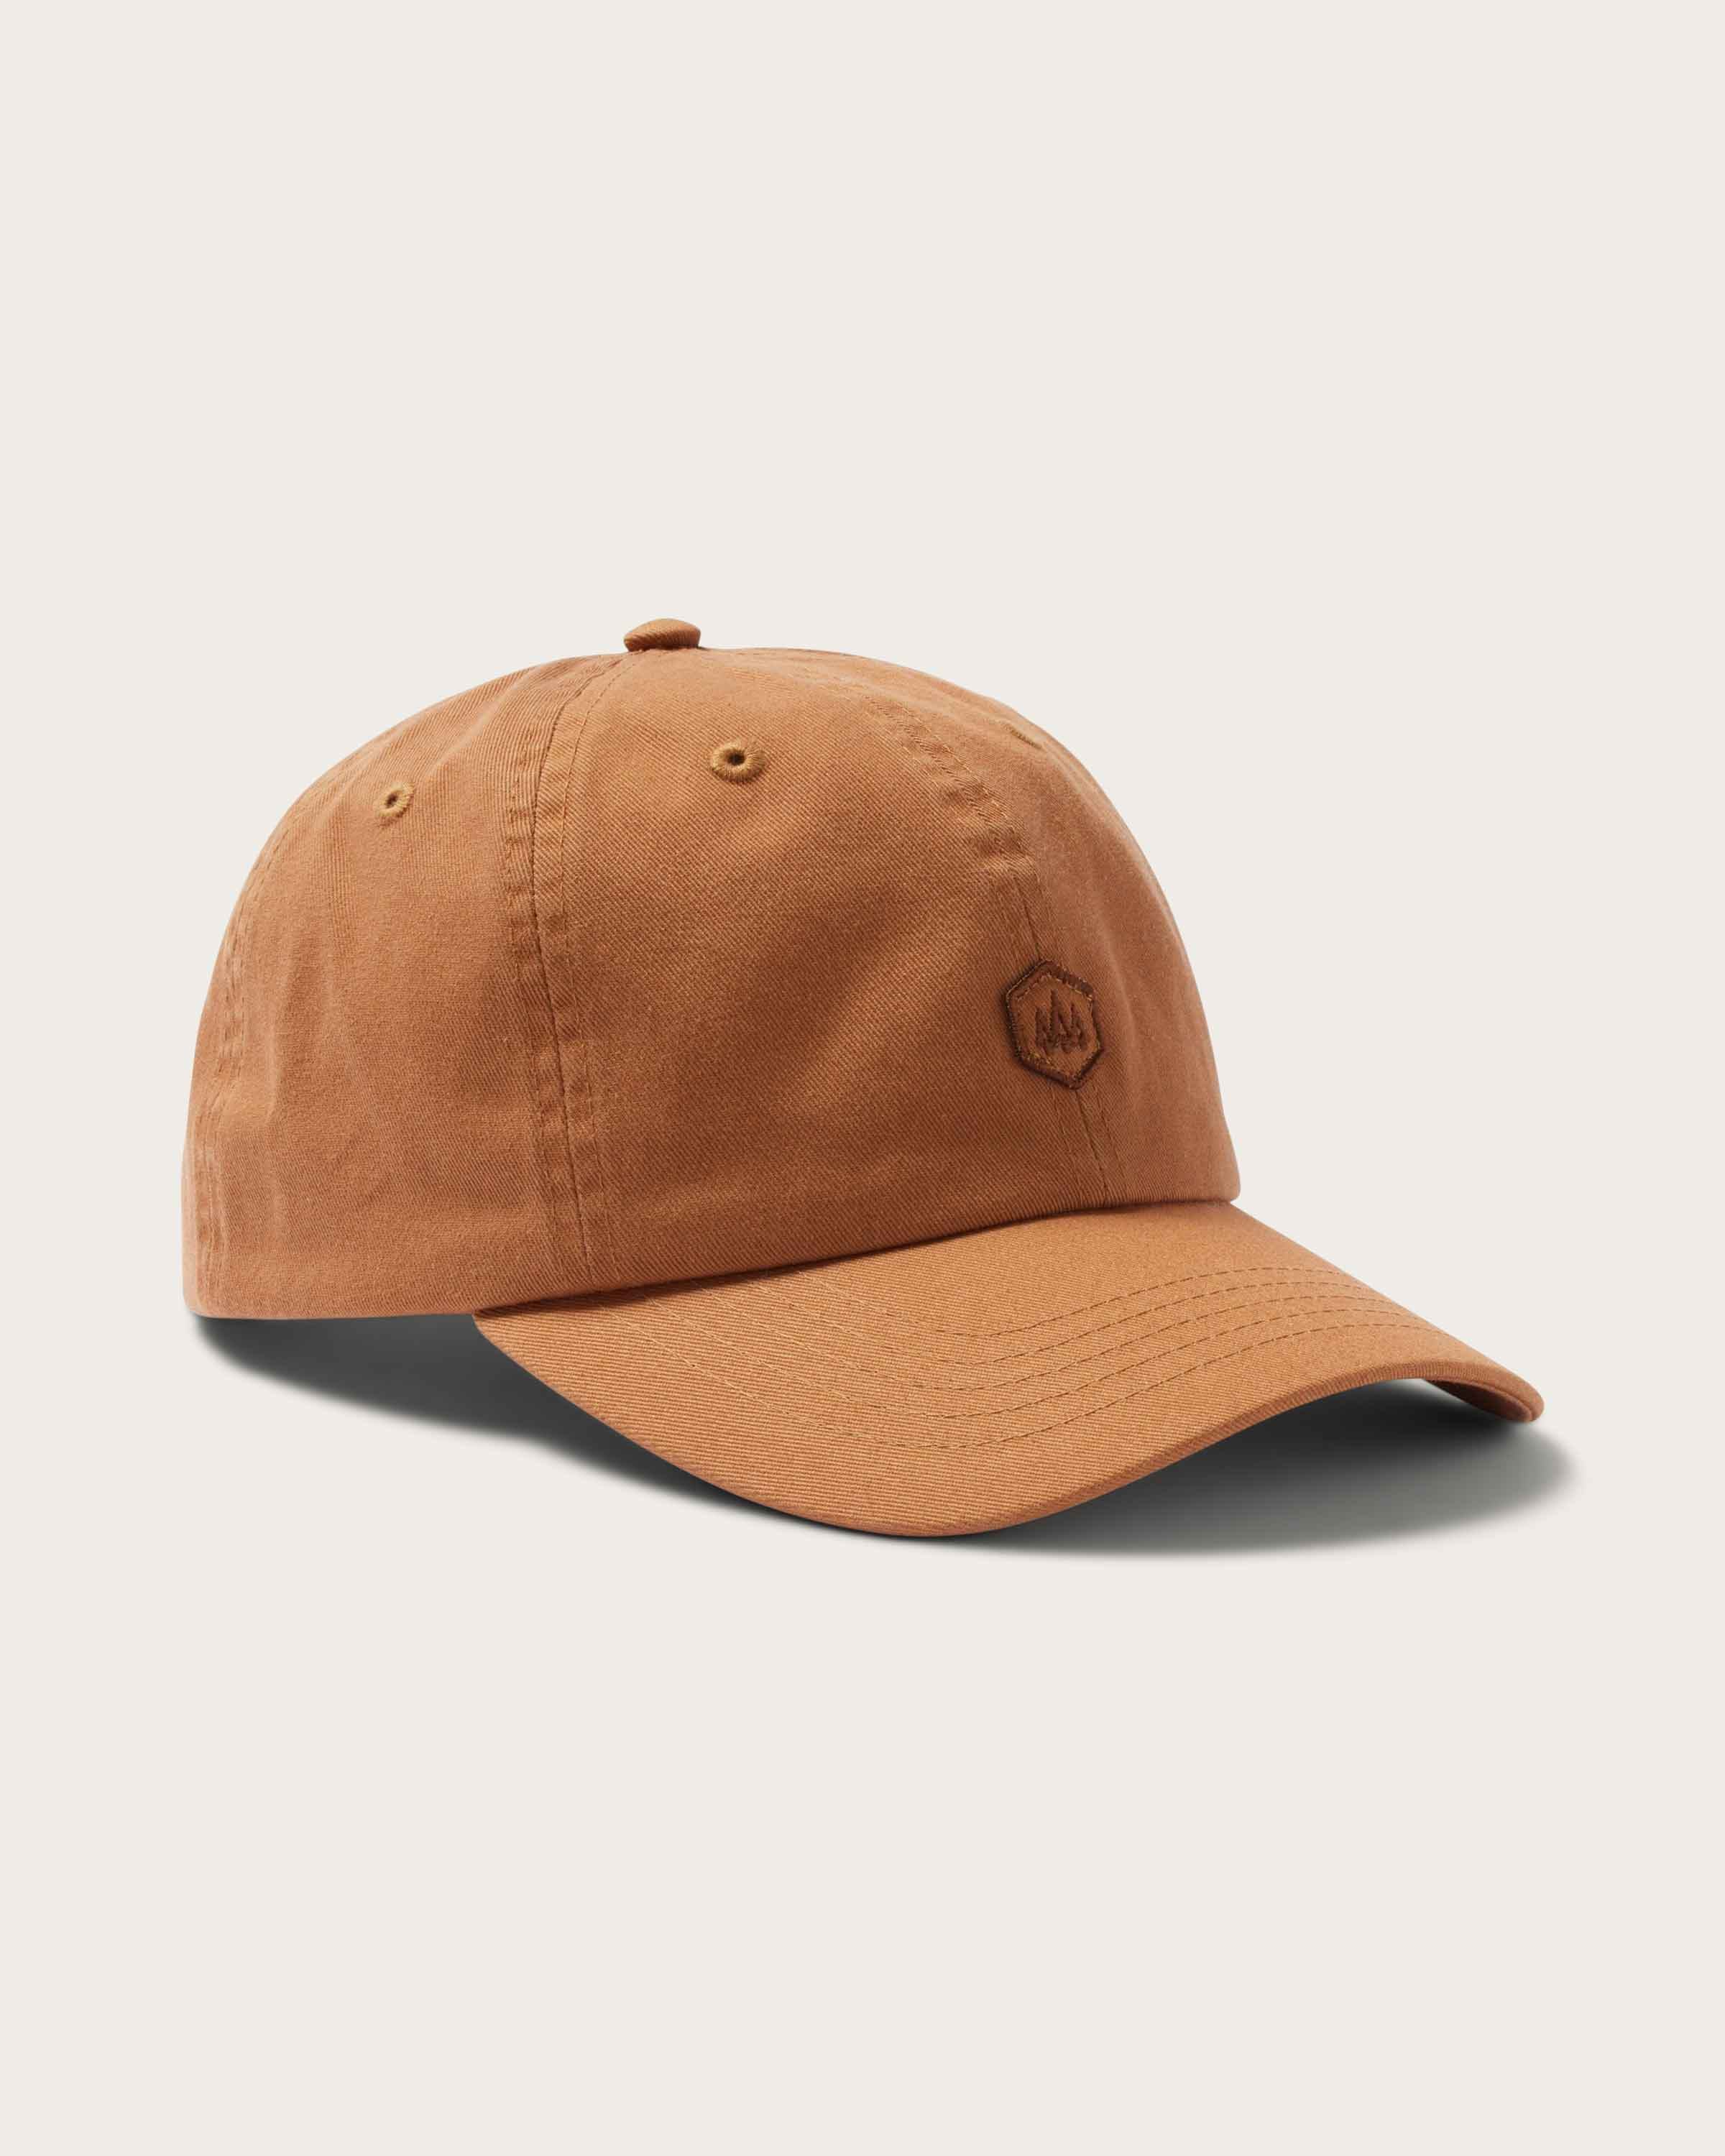 Berkley Cap in Ginger - undefined - Hemlock Hat Co. Ball Caps